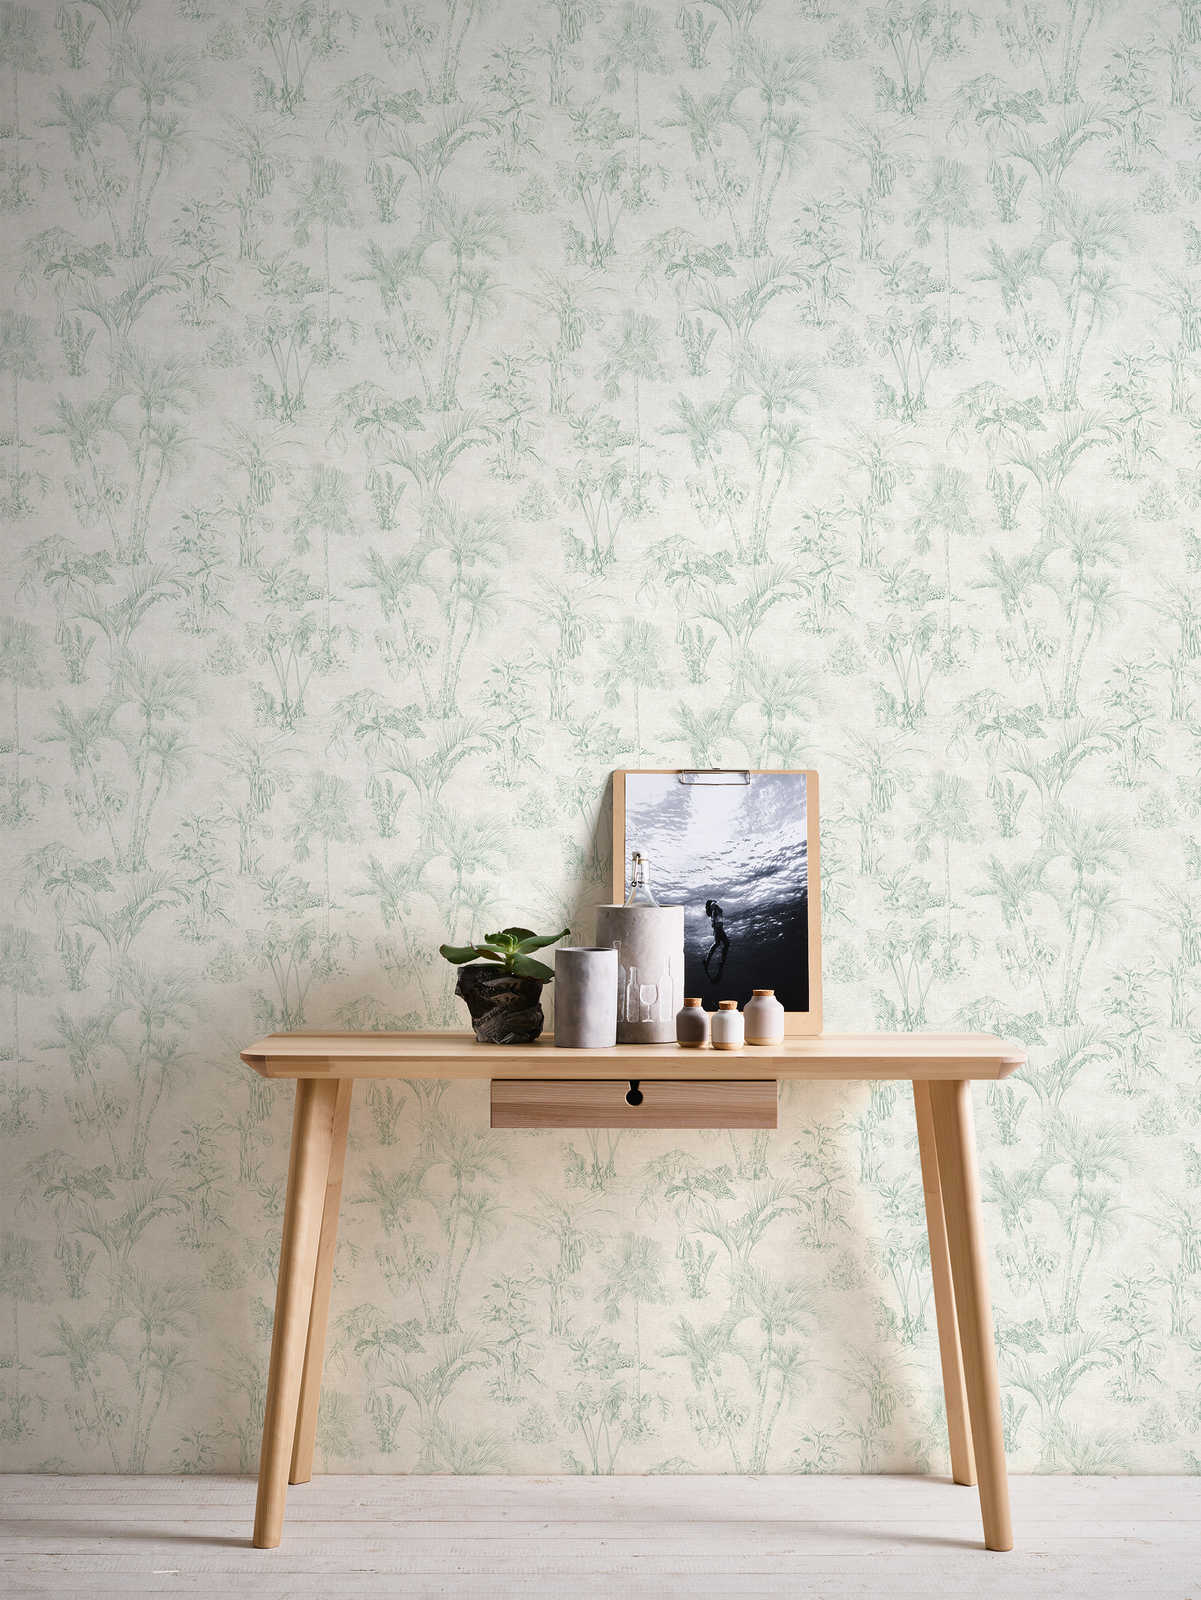             Papier peint aspect lin Design jungle avec palmiers - gris, vert
        